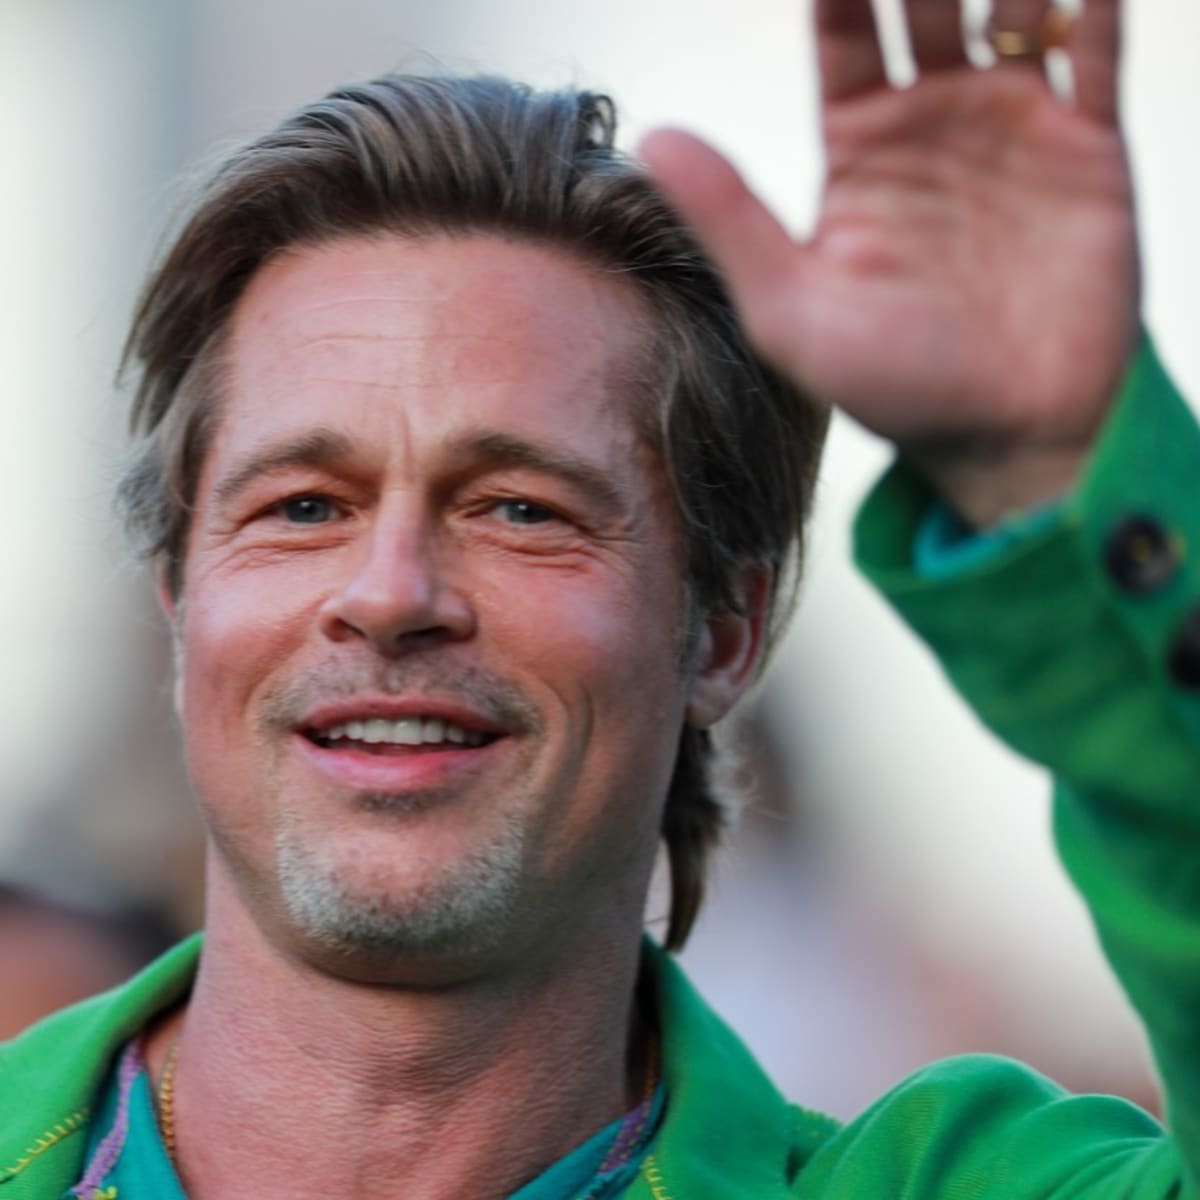 Šarmantní americký herec Brad Pitt přijel na losangelskou premiéru svého nového akčního filmu Bullet Train v zelinkavém kompletu. 